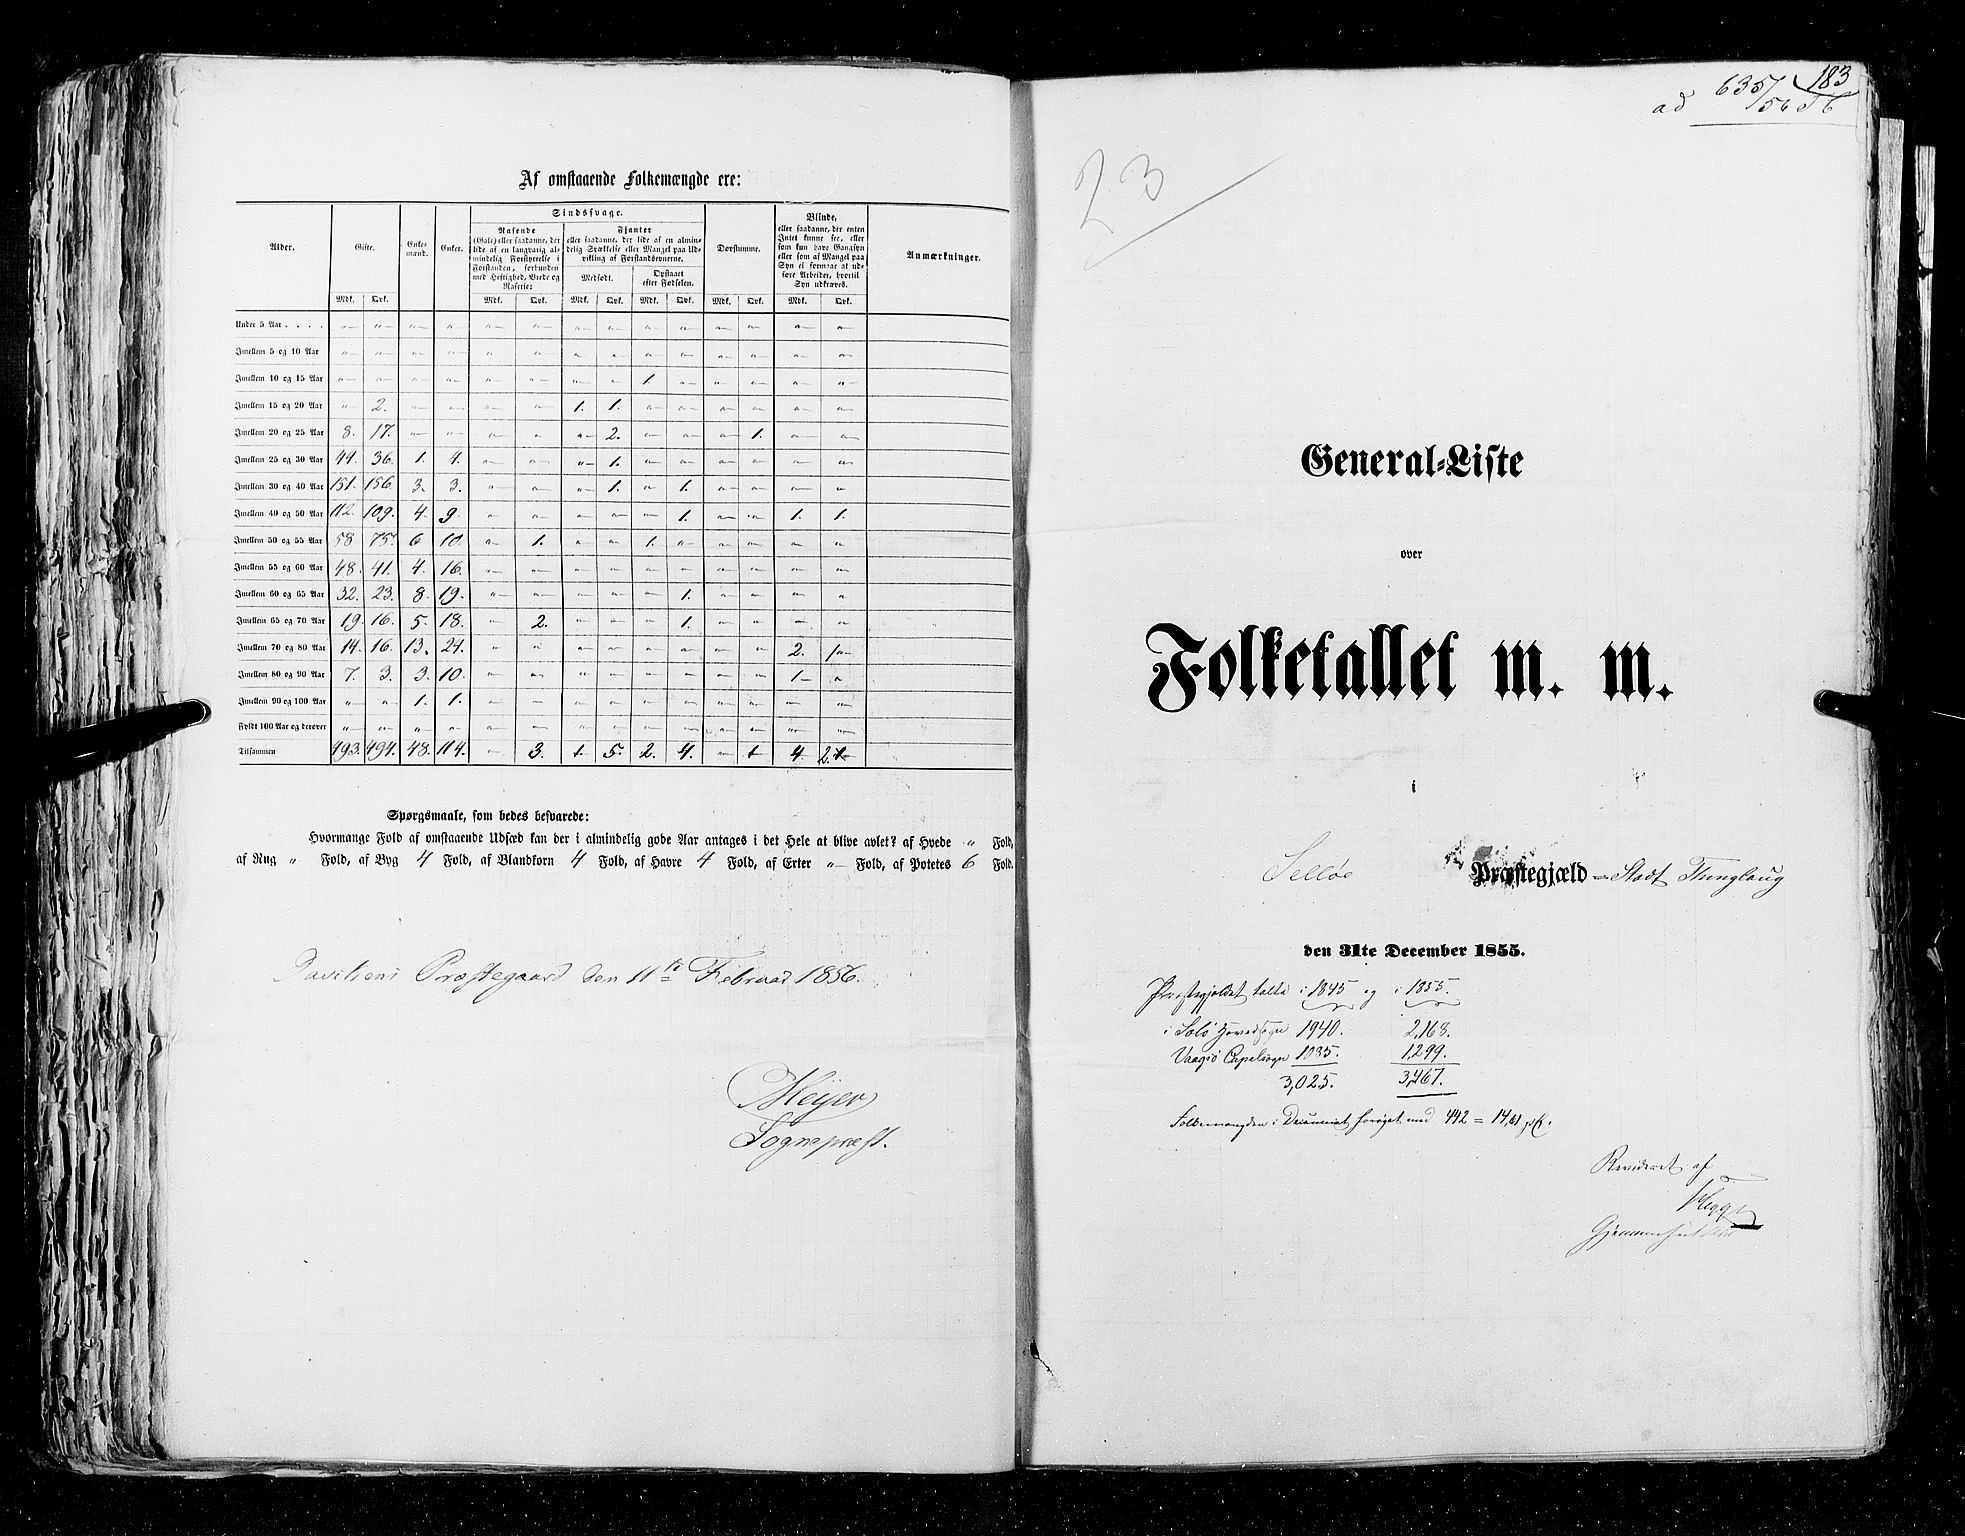 RA, Folketellingen 1855, bind 5: Nordre Bergenhus amt, Romsdal amt og Søndre Trondhjem amt, 1855, s. 183